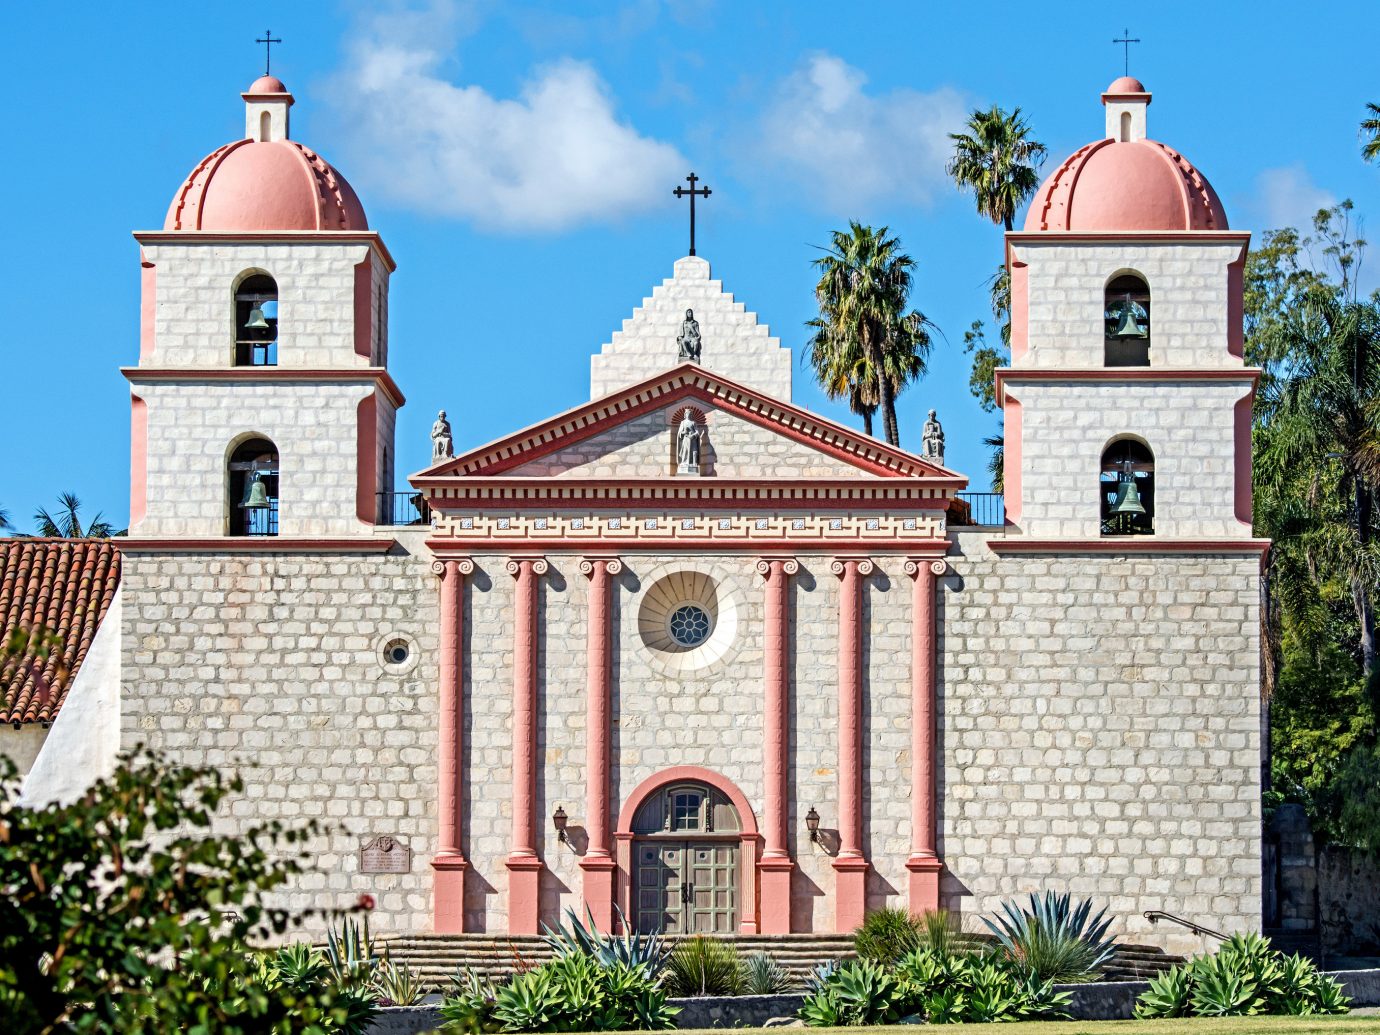 Old Mission Santa Barbara, Santa Barbara, California